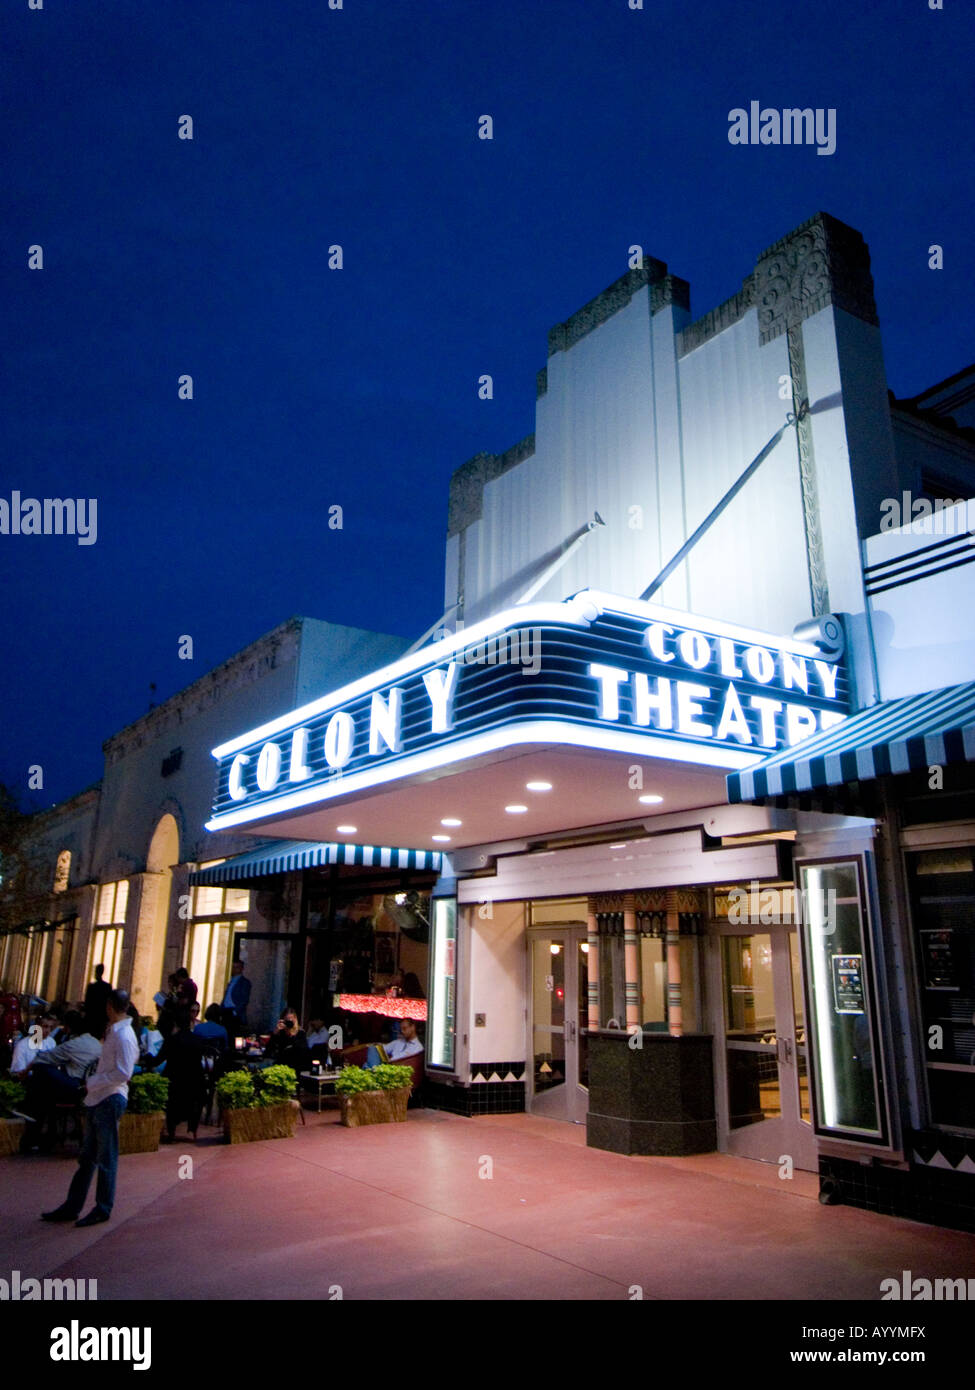 The Colony Theatre on Lincoln Road Mall, Miami, USA Stock Photo